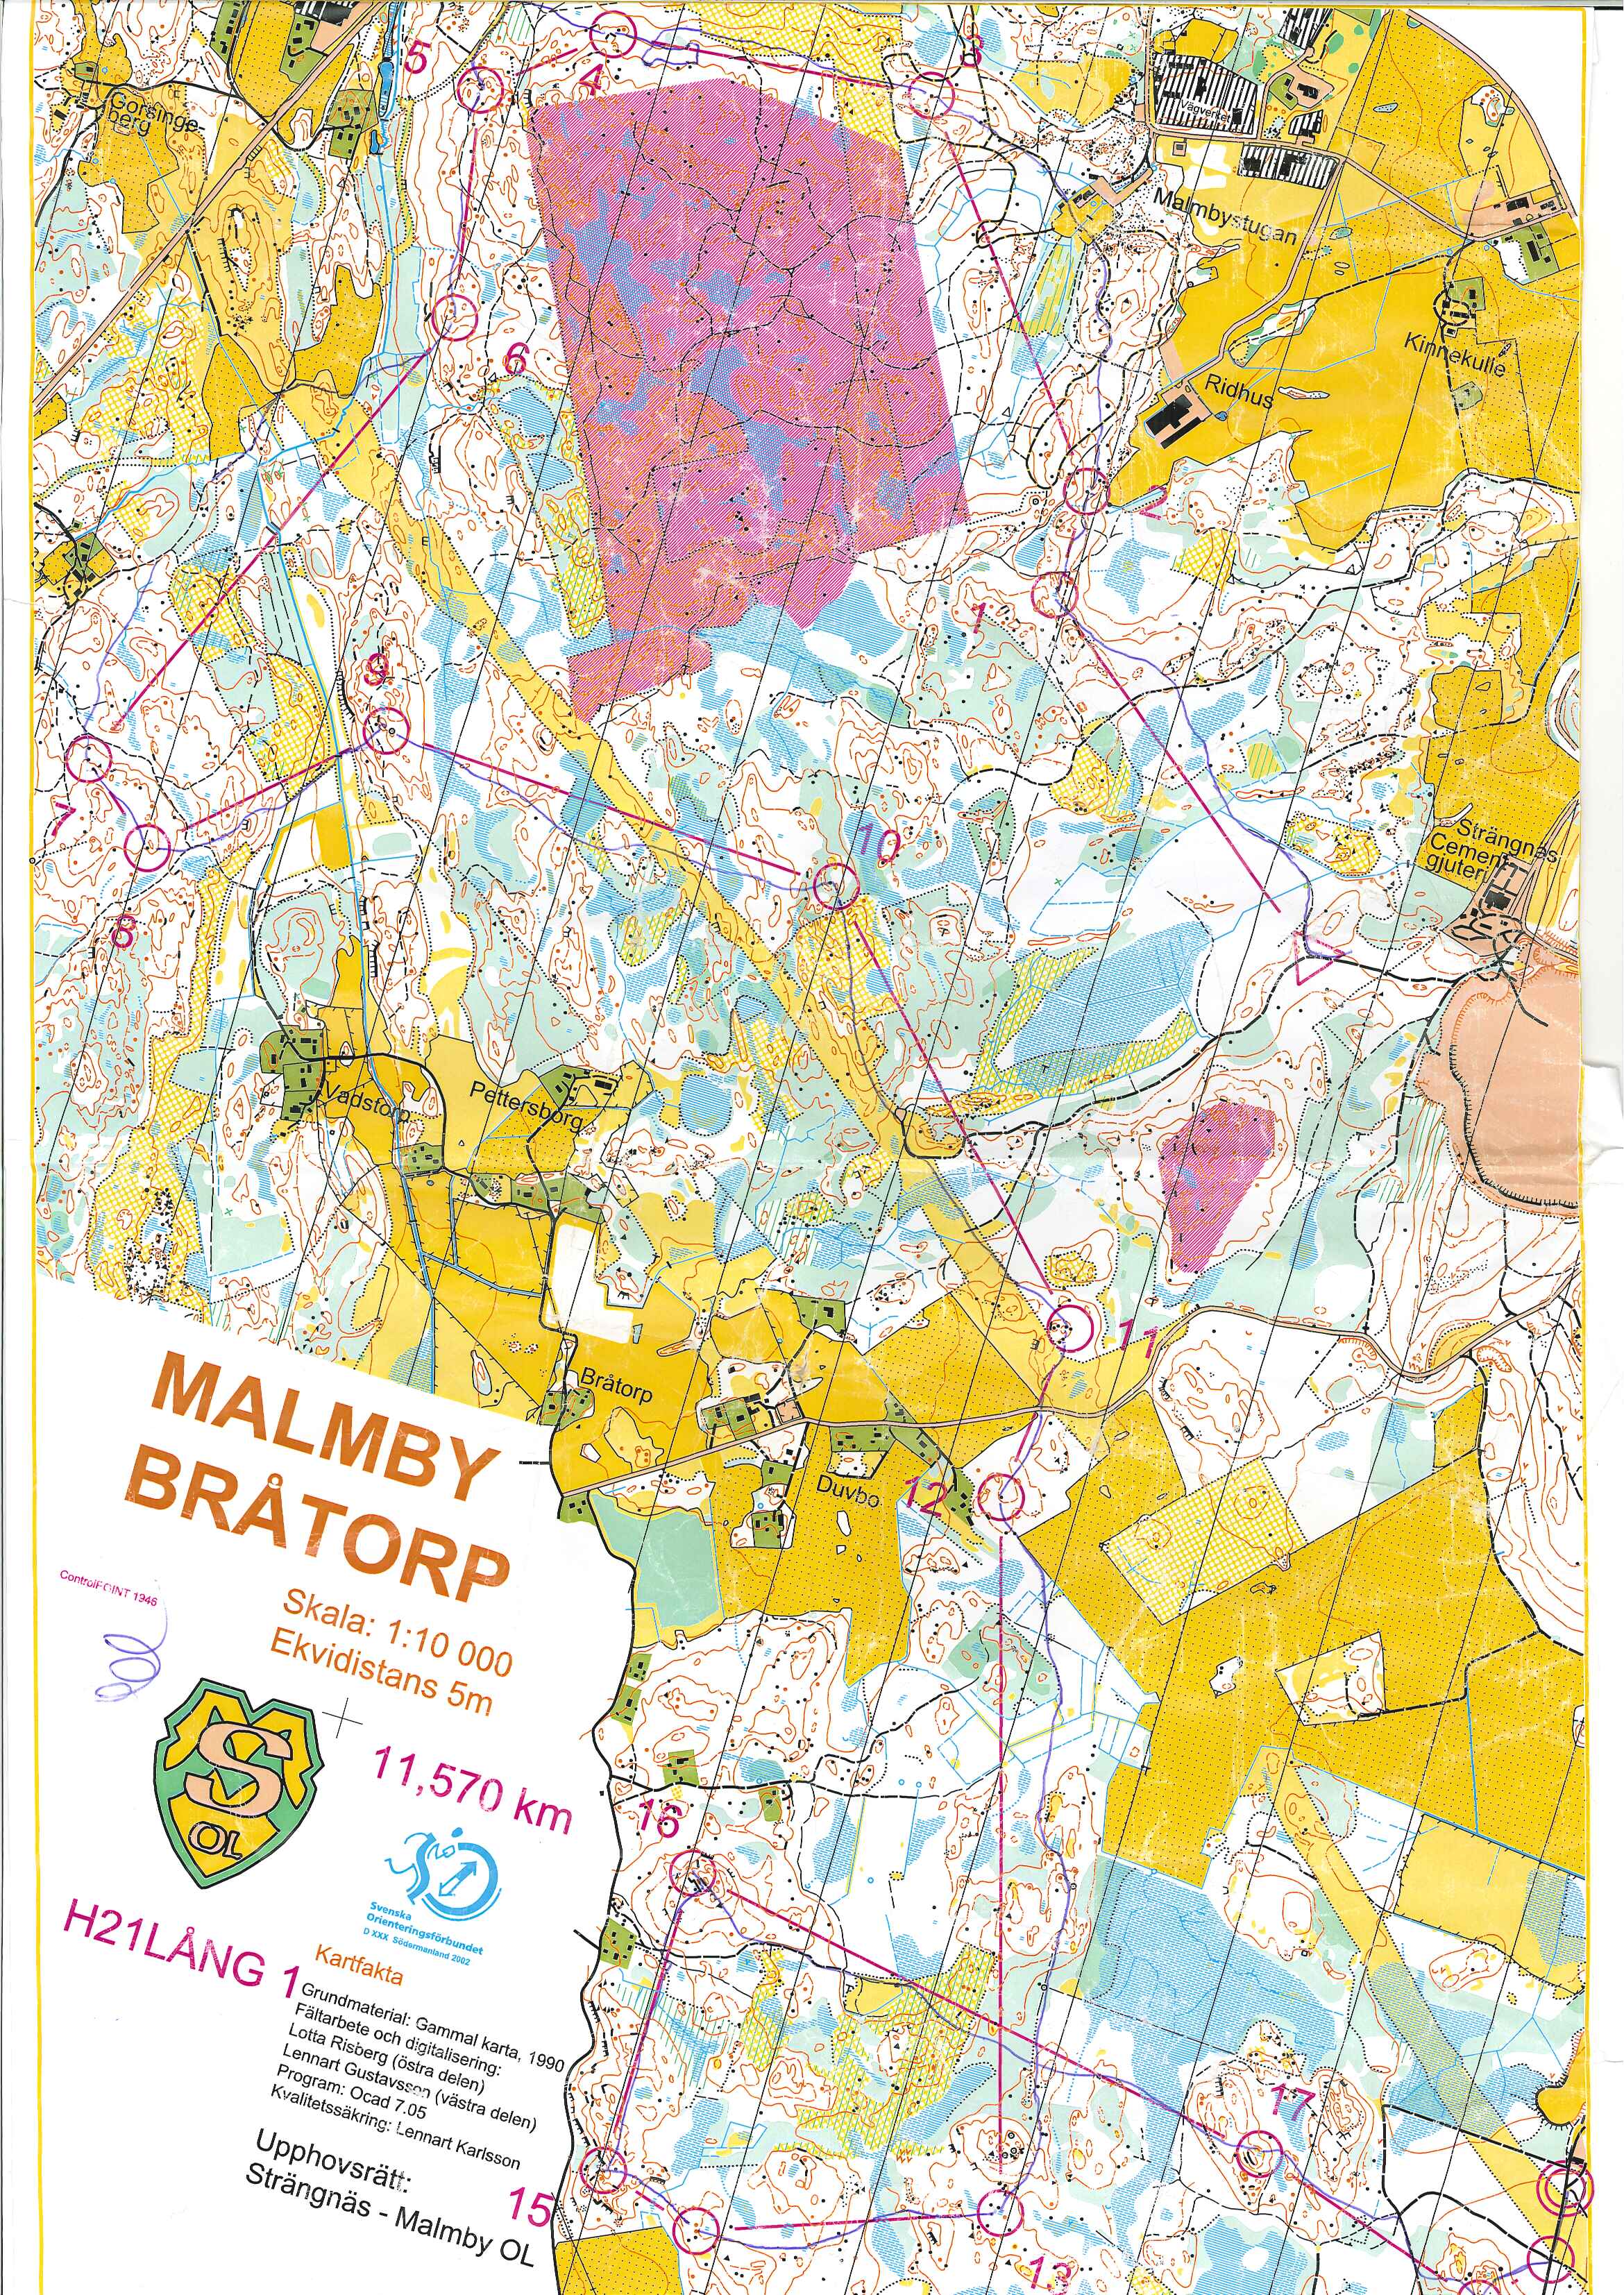 Strängnäs-Malmby (01.04.2002)